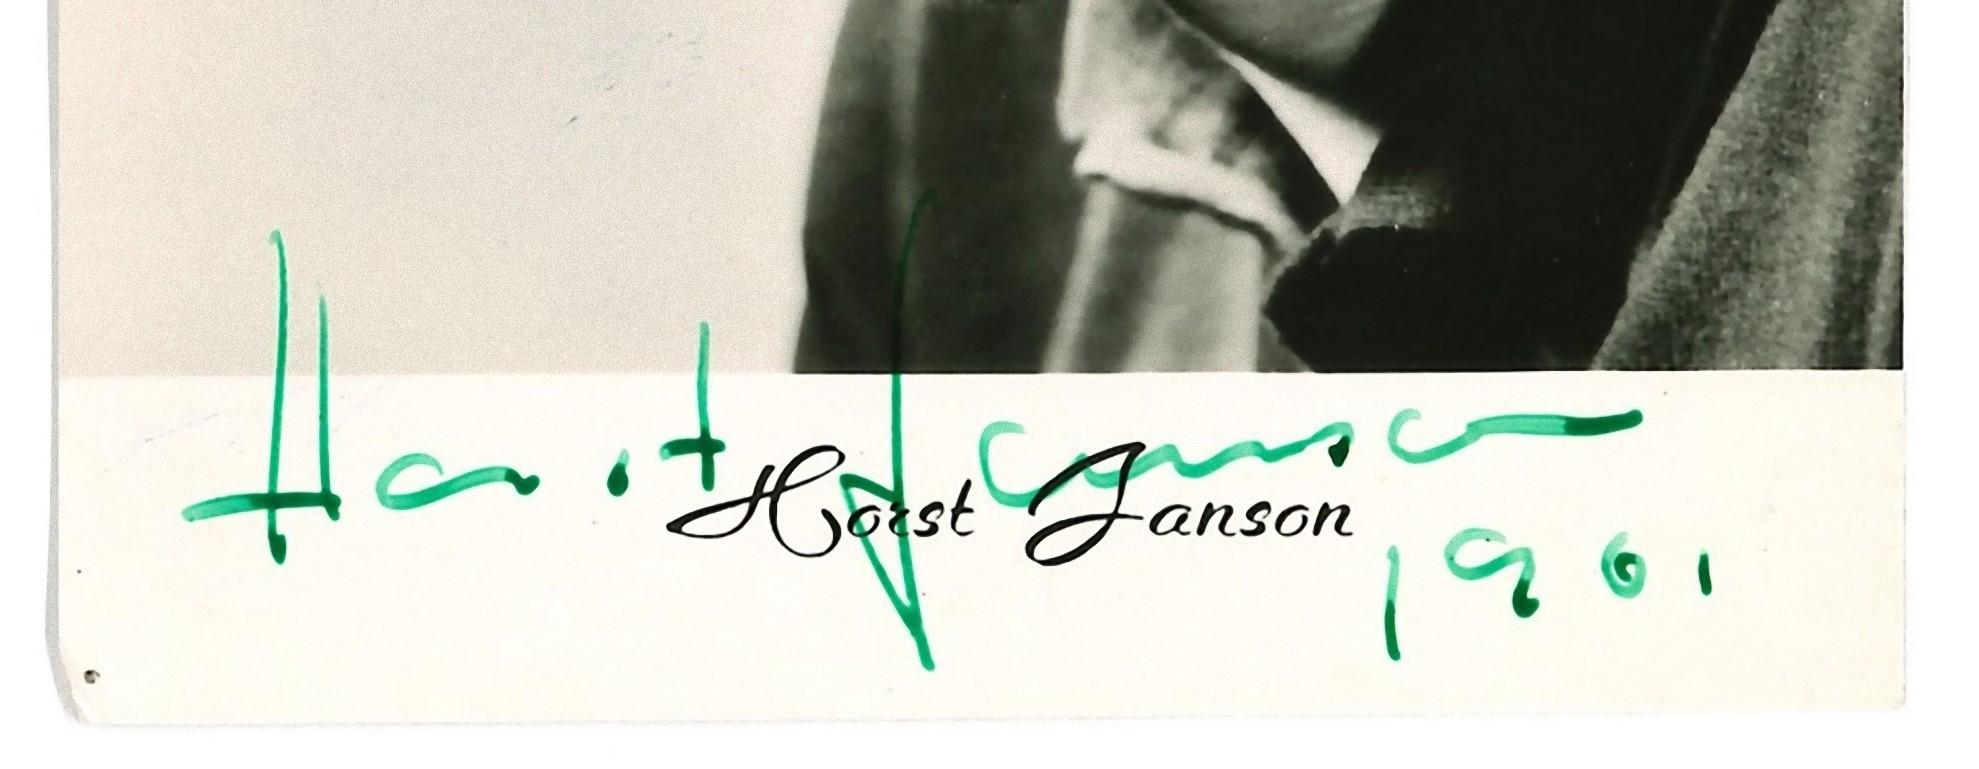 Autographisches Porträt von Horst Janson – Vintage  s/w Postkarte - 1961 – Photograph von Unknown